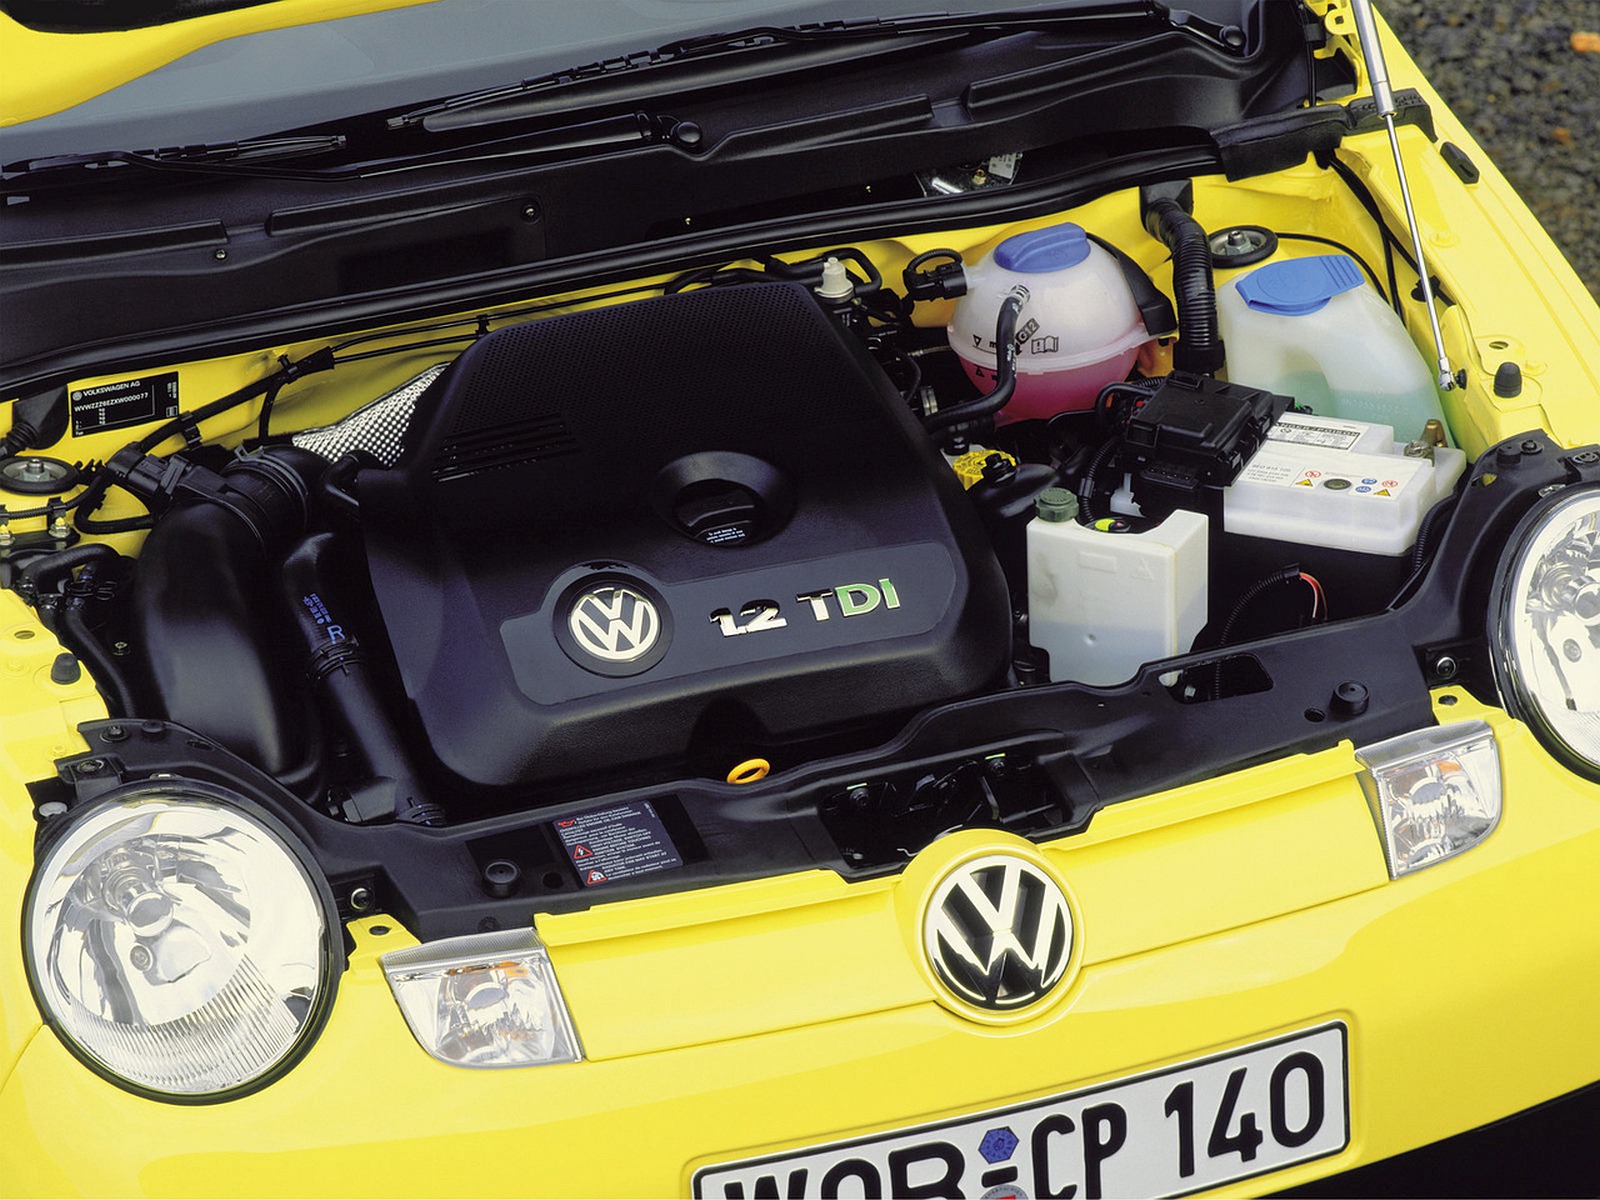 VW Lupo 3L TDI spotreba menej ako 3 litre - VW jazdenka nepoteší Putina ani Brusel!